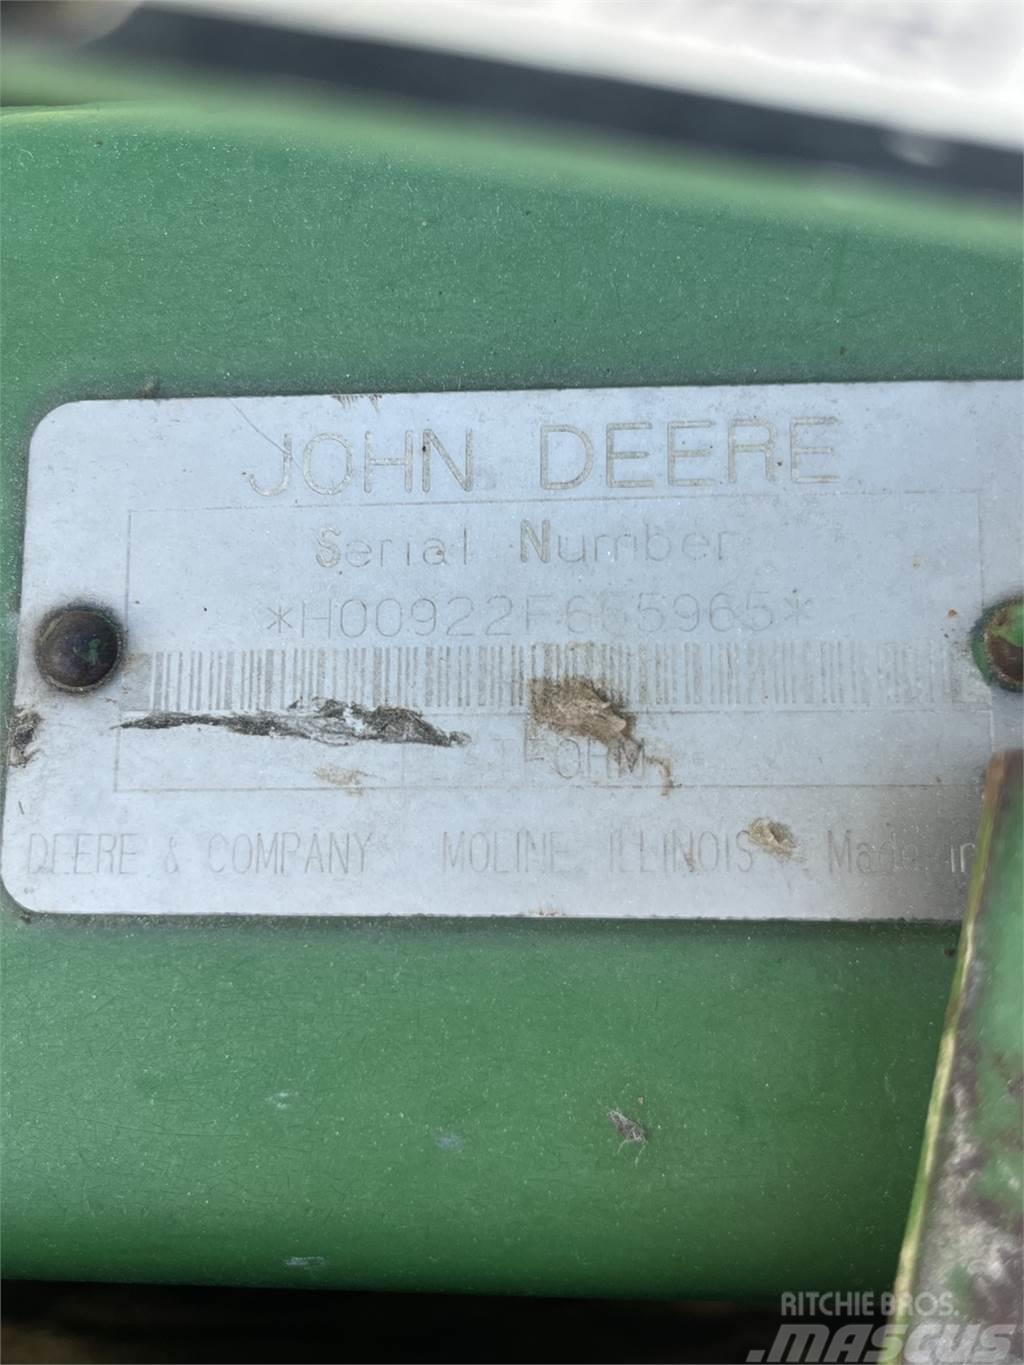 John Deere 922 Příslušenství a náhradní díly ke kombajnům